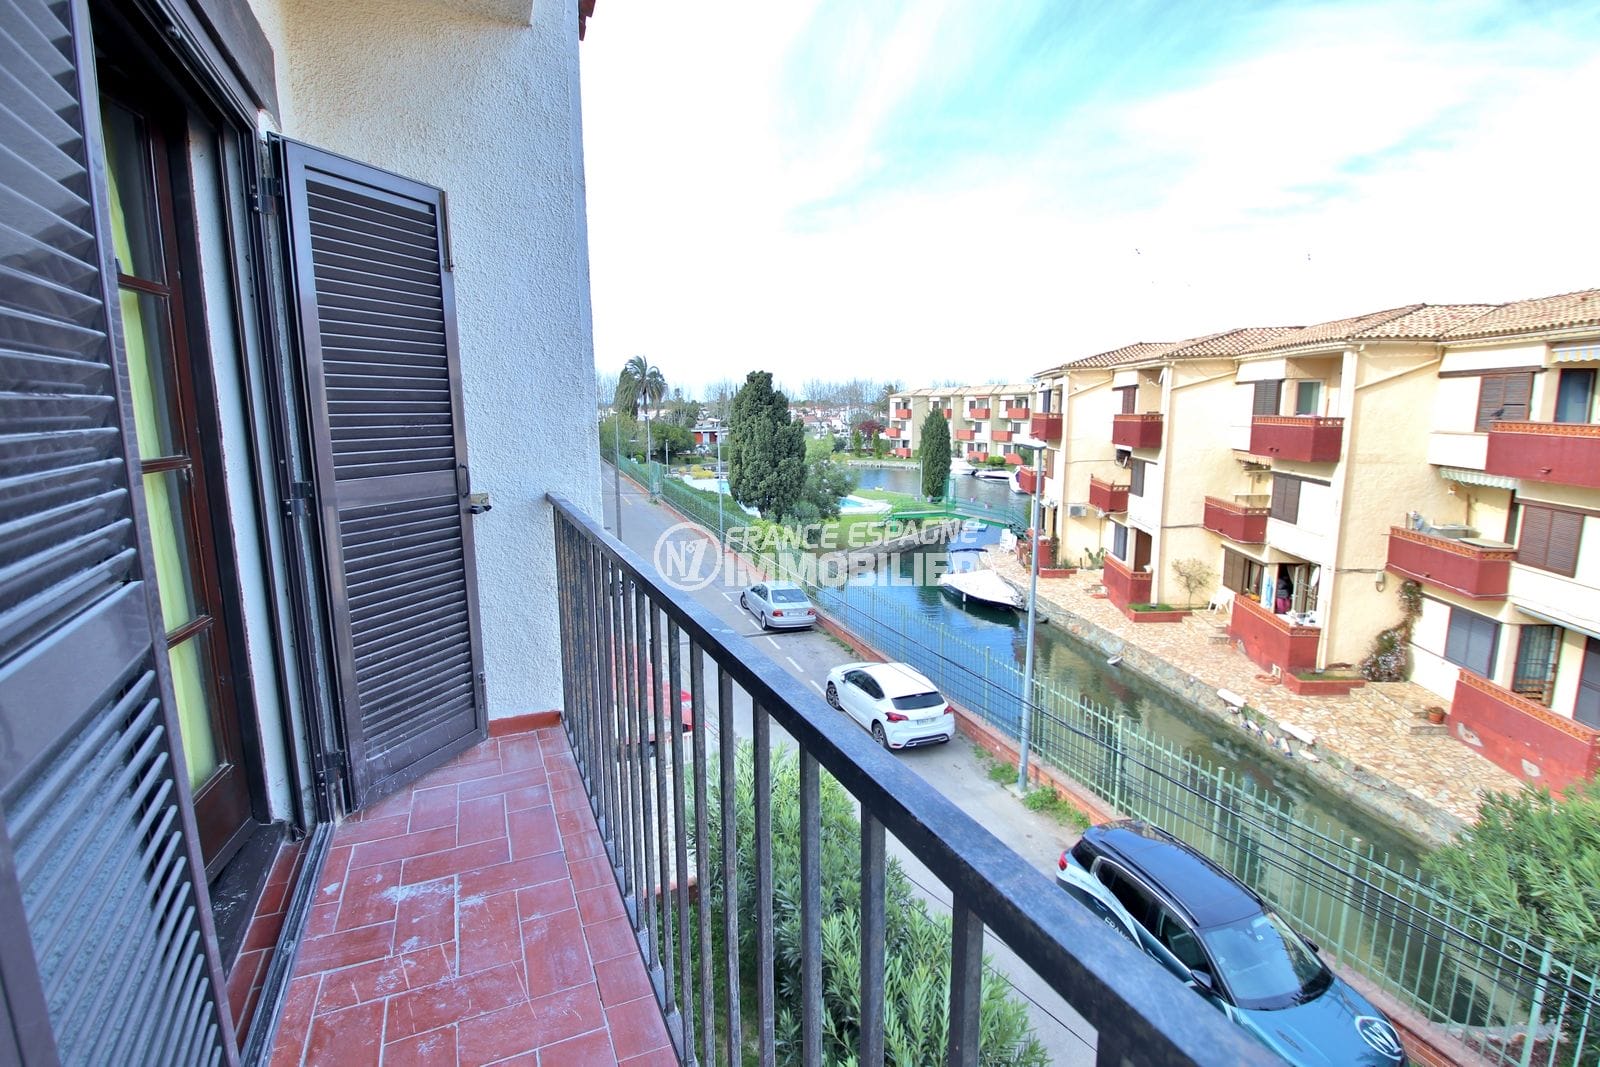 immo empuria, appartement 2 pièces 40 m² avec balcon vue marina dans petite résidence, parking commun